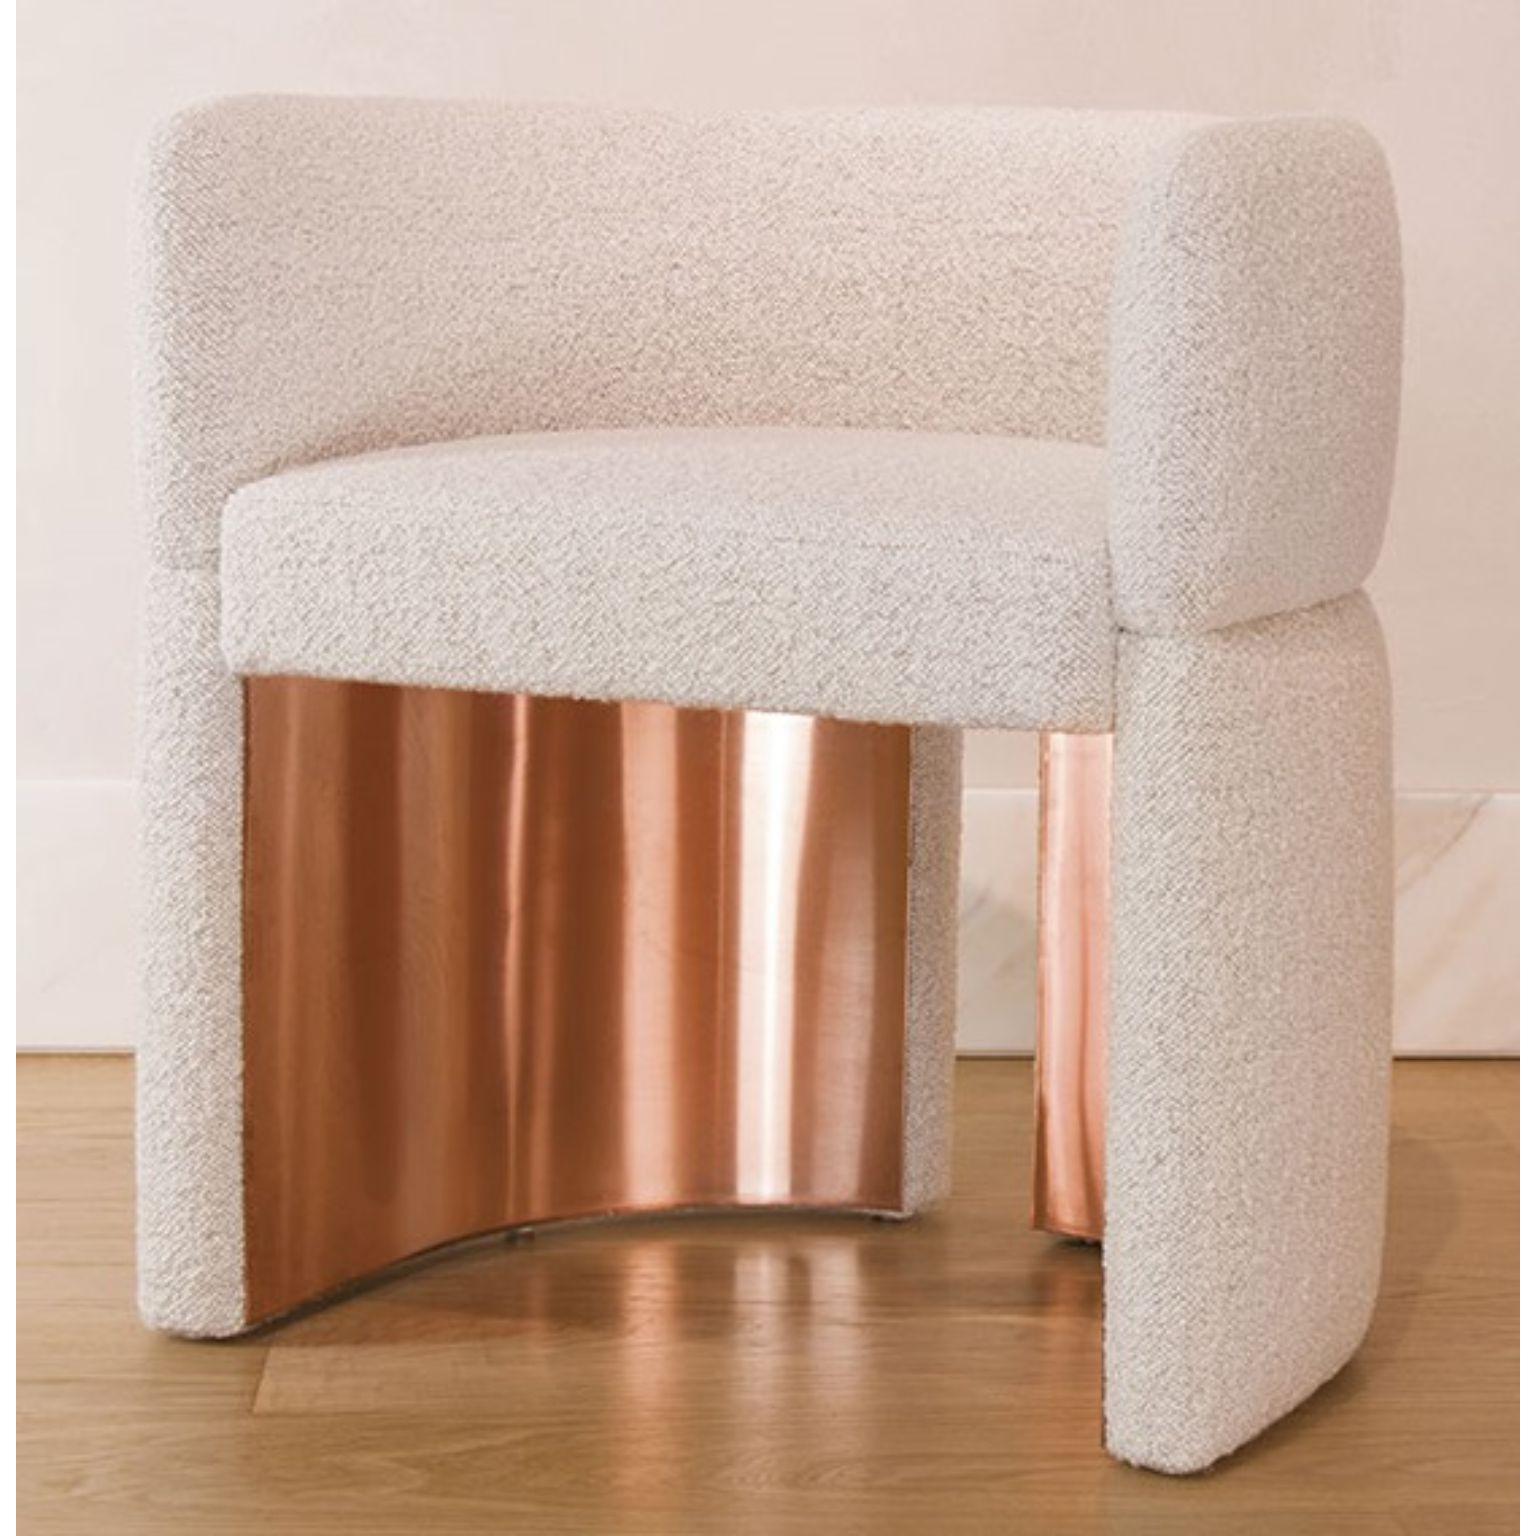 Eclisse Easy Sessel von Andrea Bonini
Limitierte Auflage
Abmessungen: T 21 x B 62 x H 70 cm.
MATERIALIEN: Bouclè-Stoff und Kupfer.

Hergestellt in Italien. Limitierte Serie, nummerierte und signierte Stücke. Kundenspezifische Größe oder Ausführung